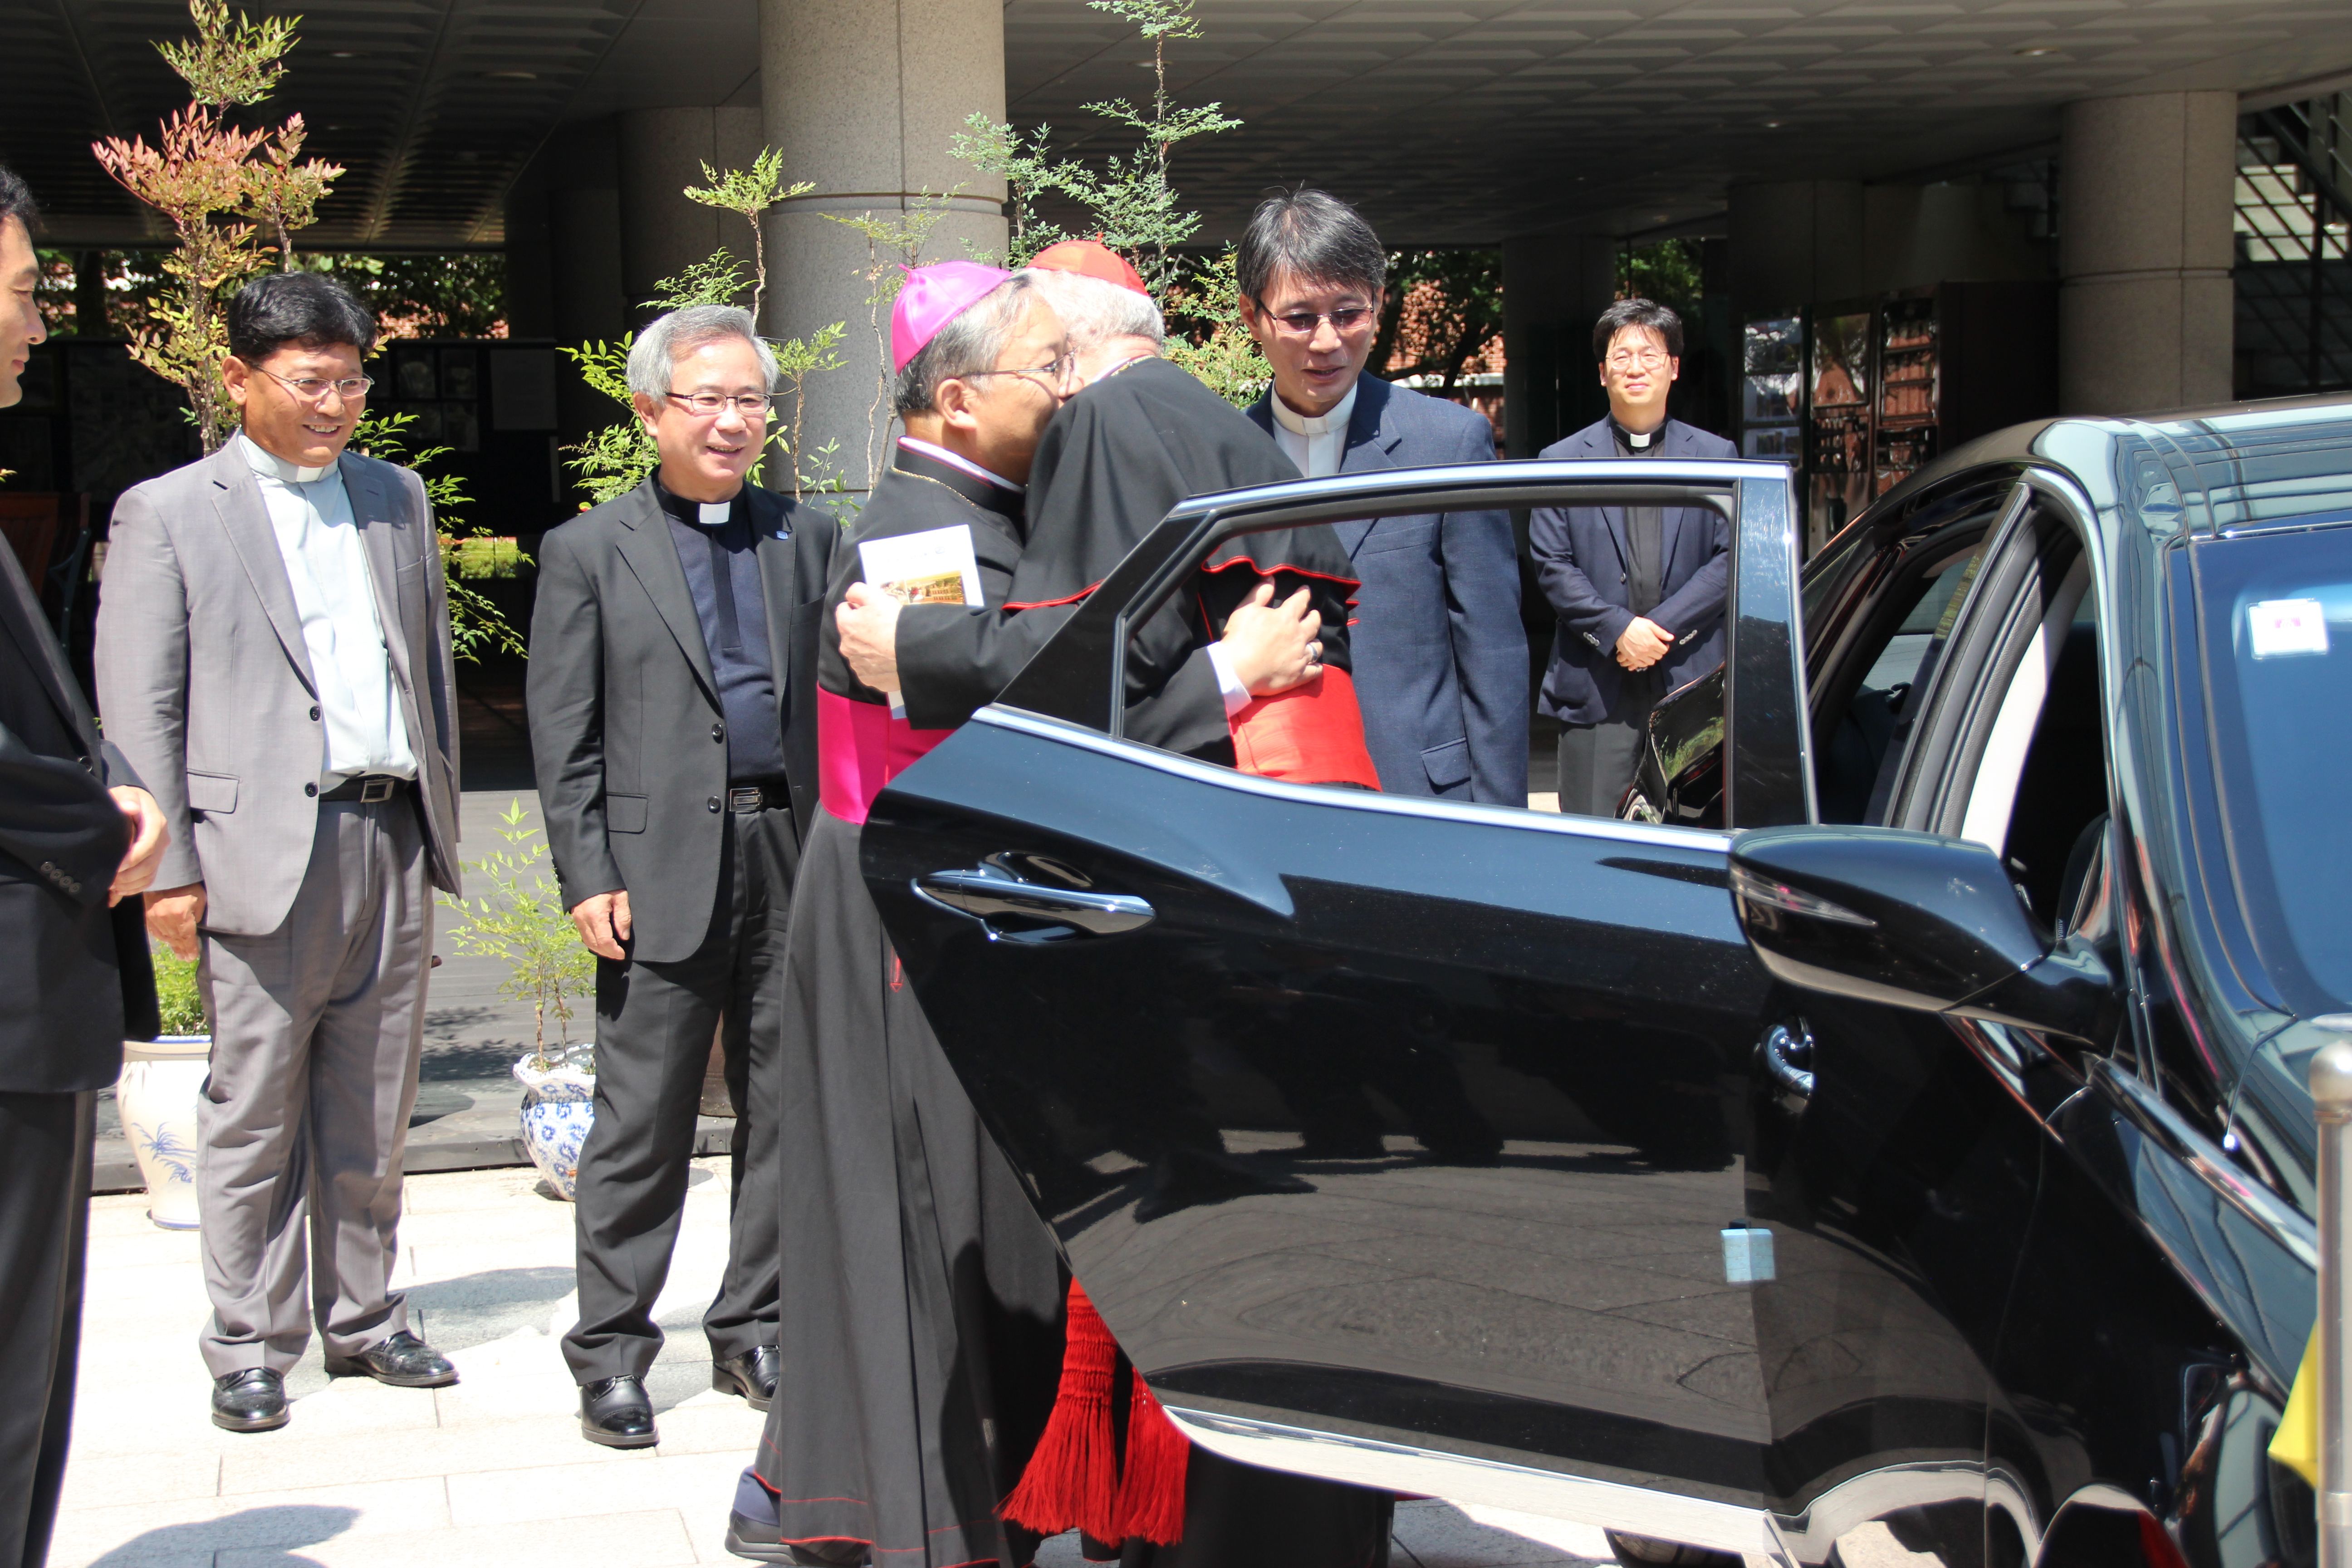 아시아가톨릭대학연합총회 참석자 방문(2013.8.23)의 관련된 이미지 입니다.